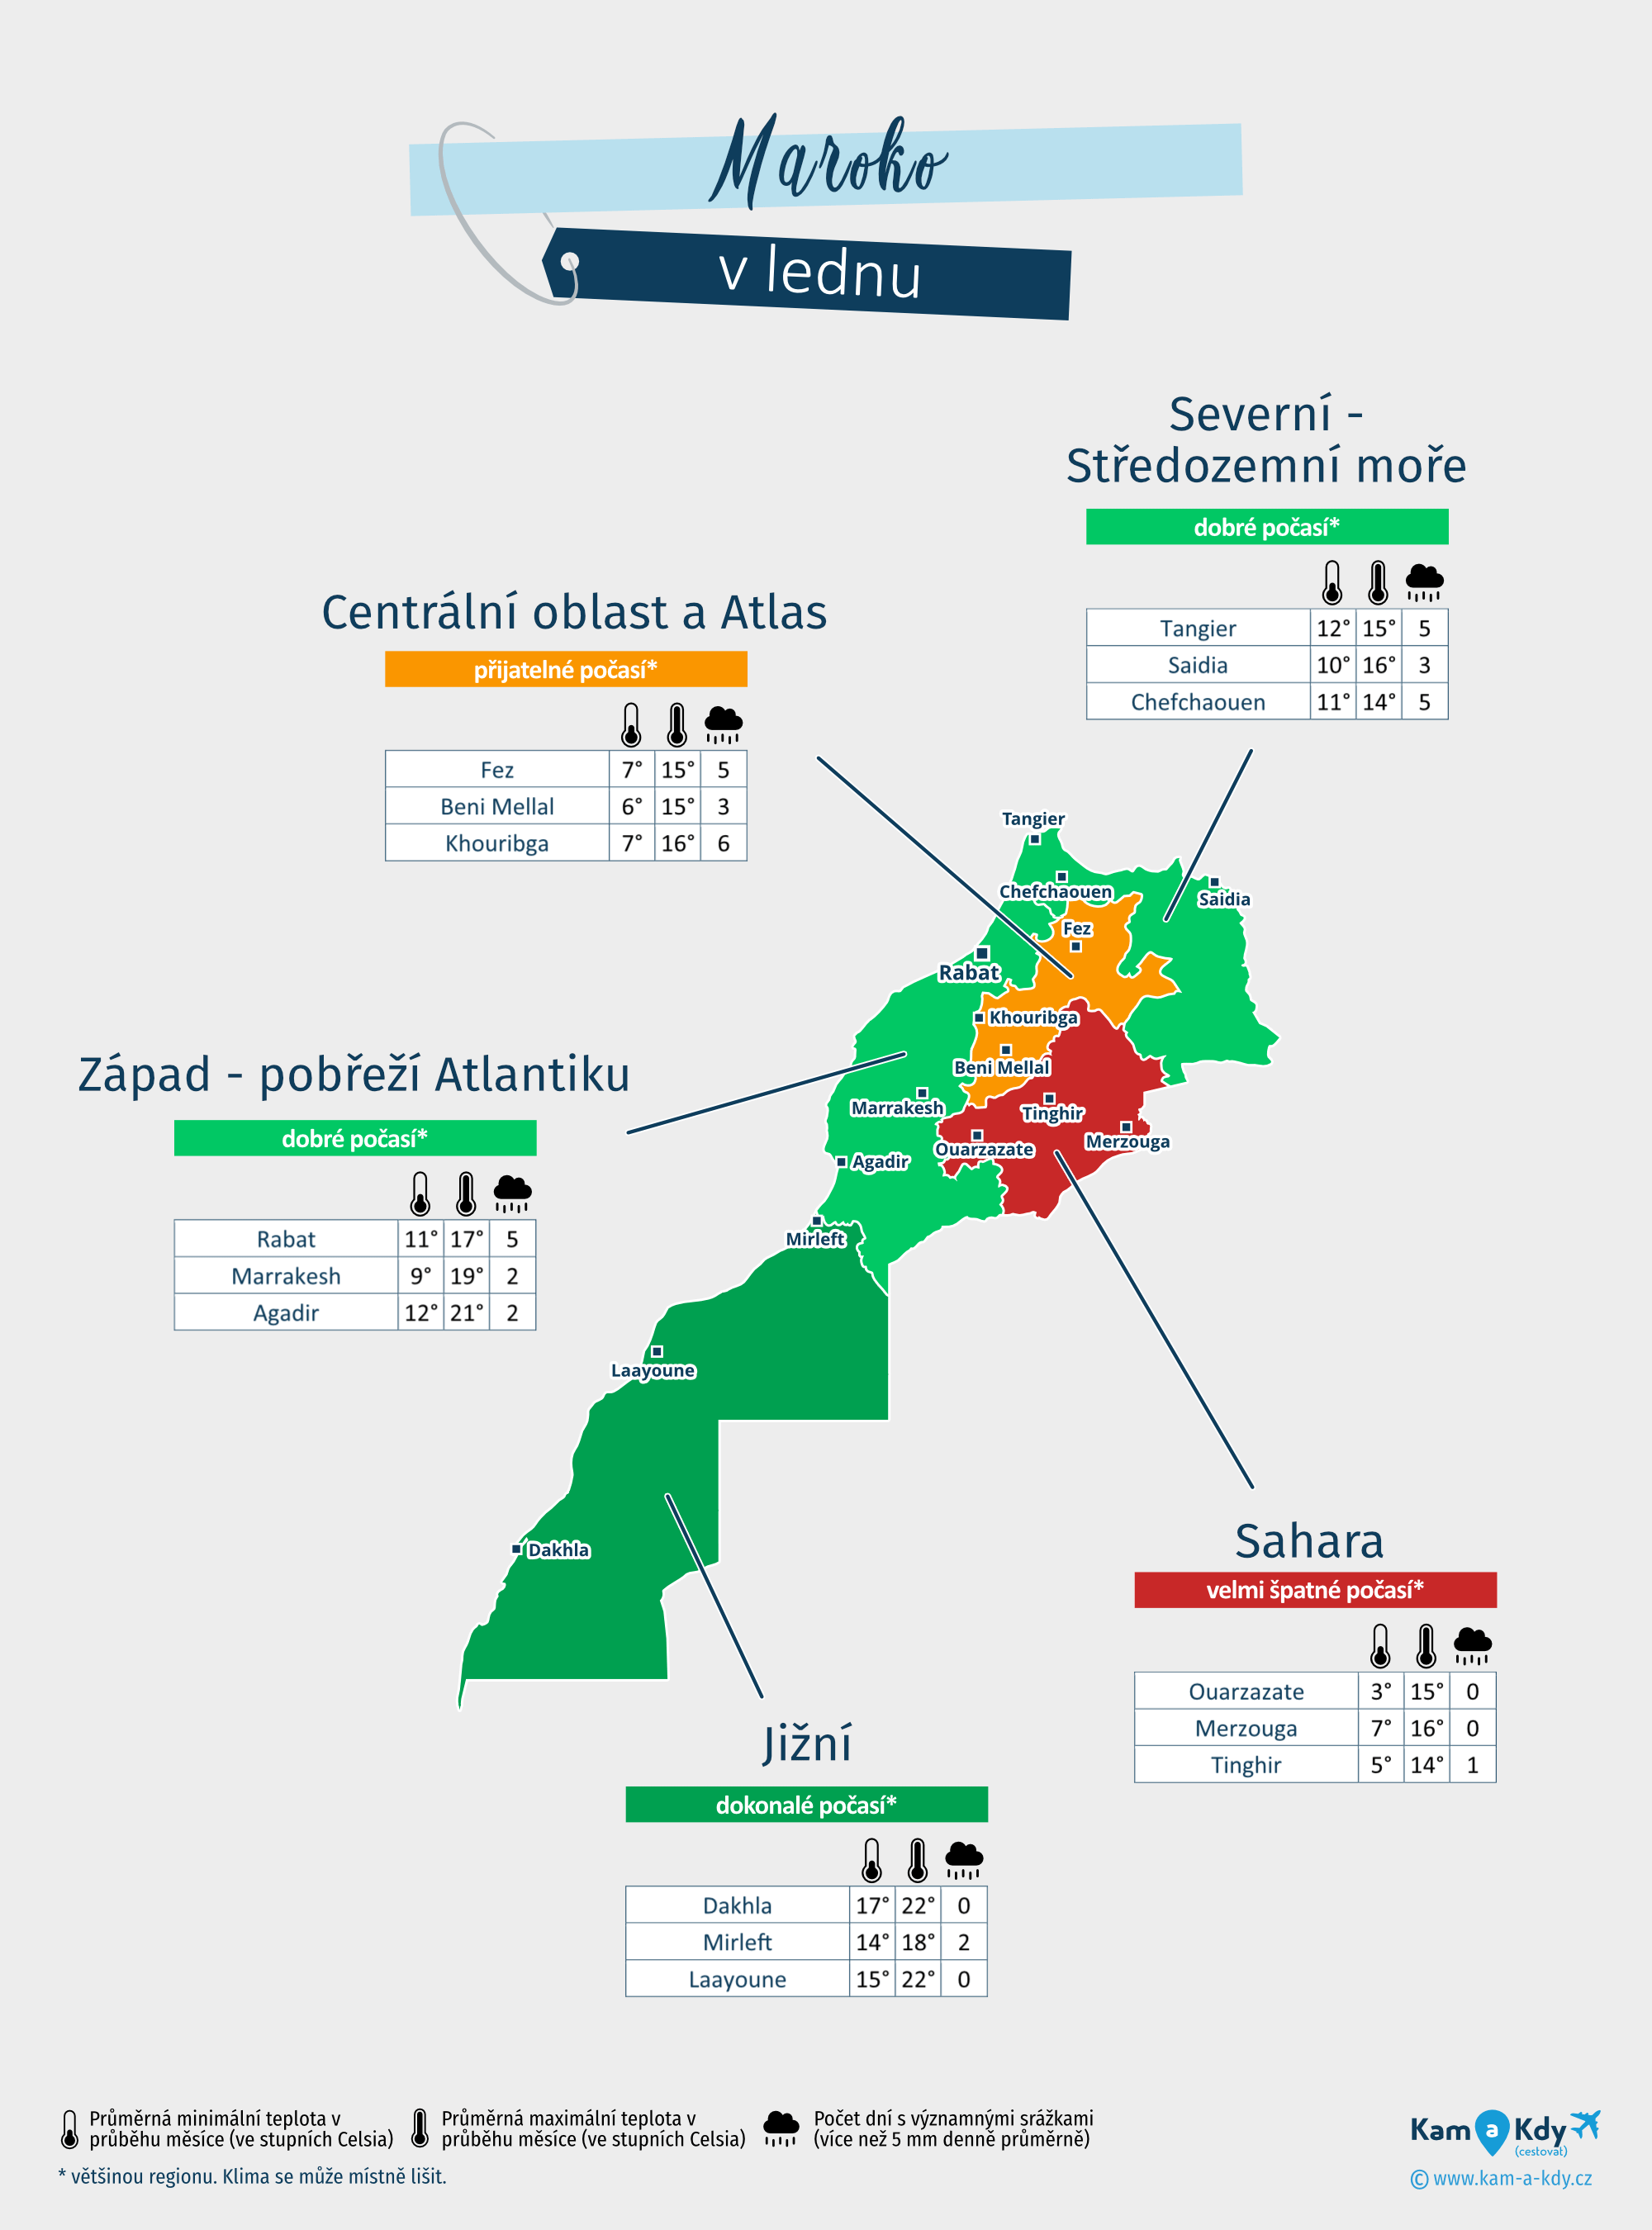 Maroko: mapa počasí v lednu v různých regionech